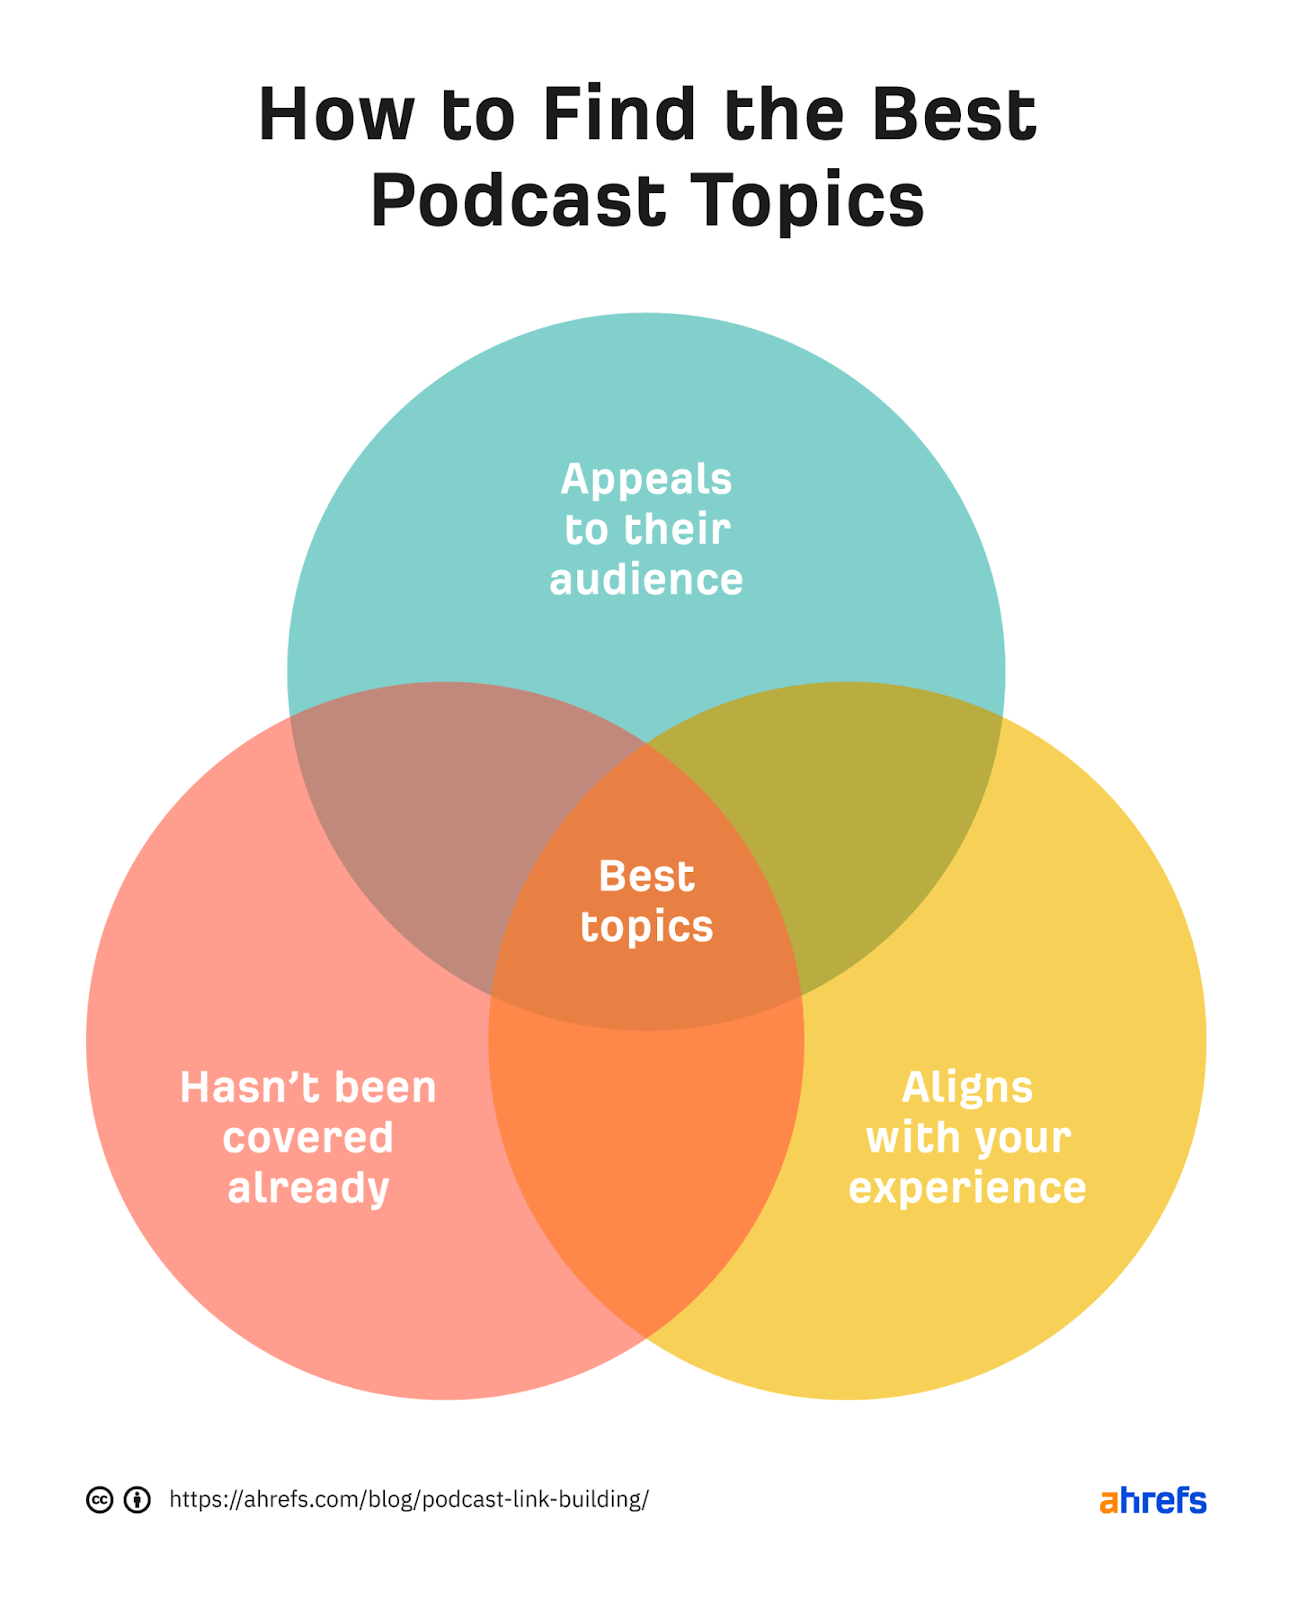 Nasıl bulunur-podcast konuları